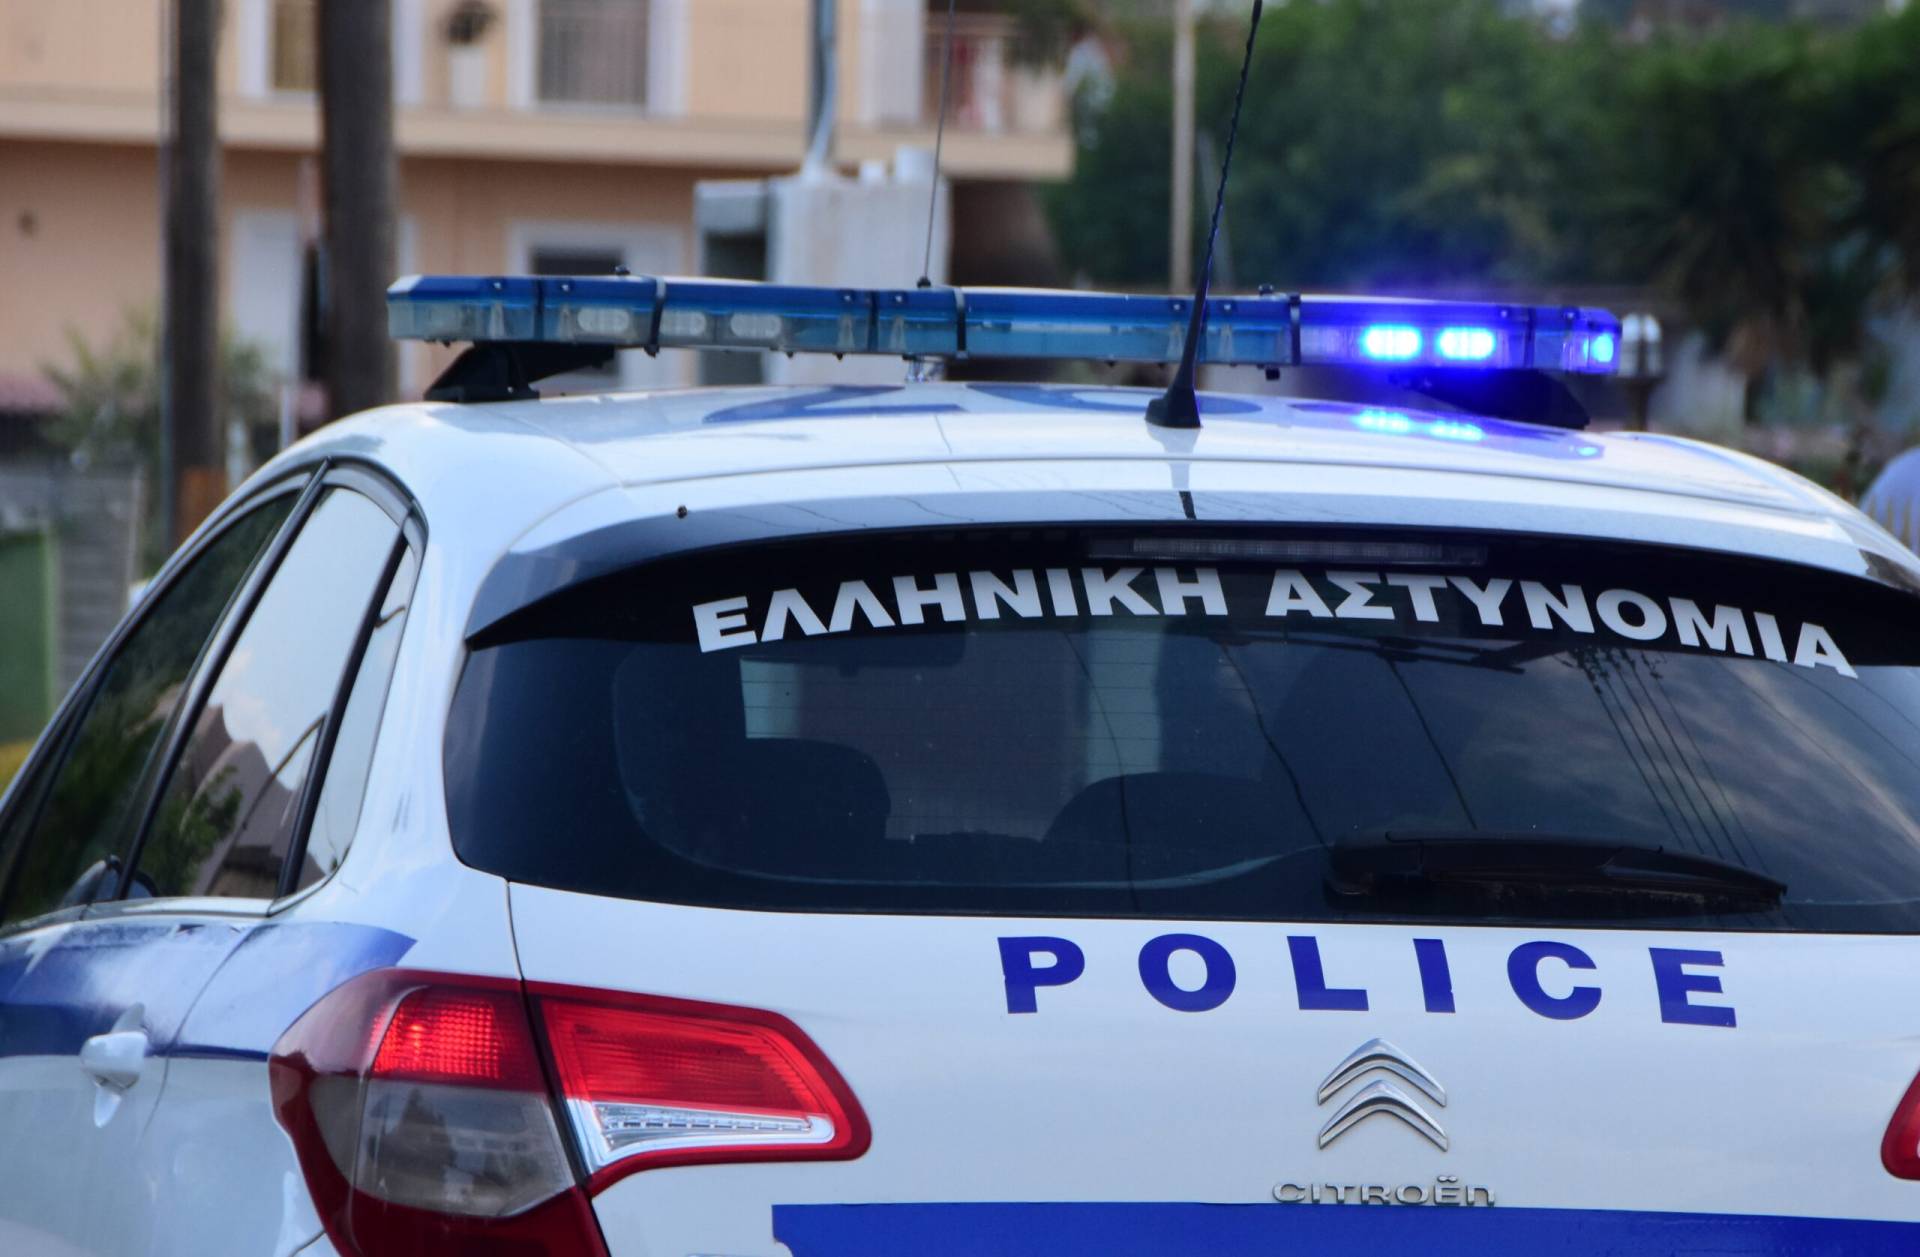 Τροχαία: 368 παραβάσεις και 12 συλλήψεις σε τροχονομικούς ελέγχους στην παραλιακή Αθηνών – Σουνίου